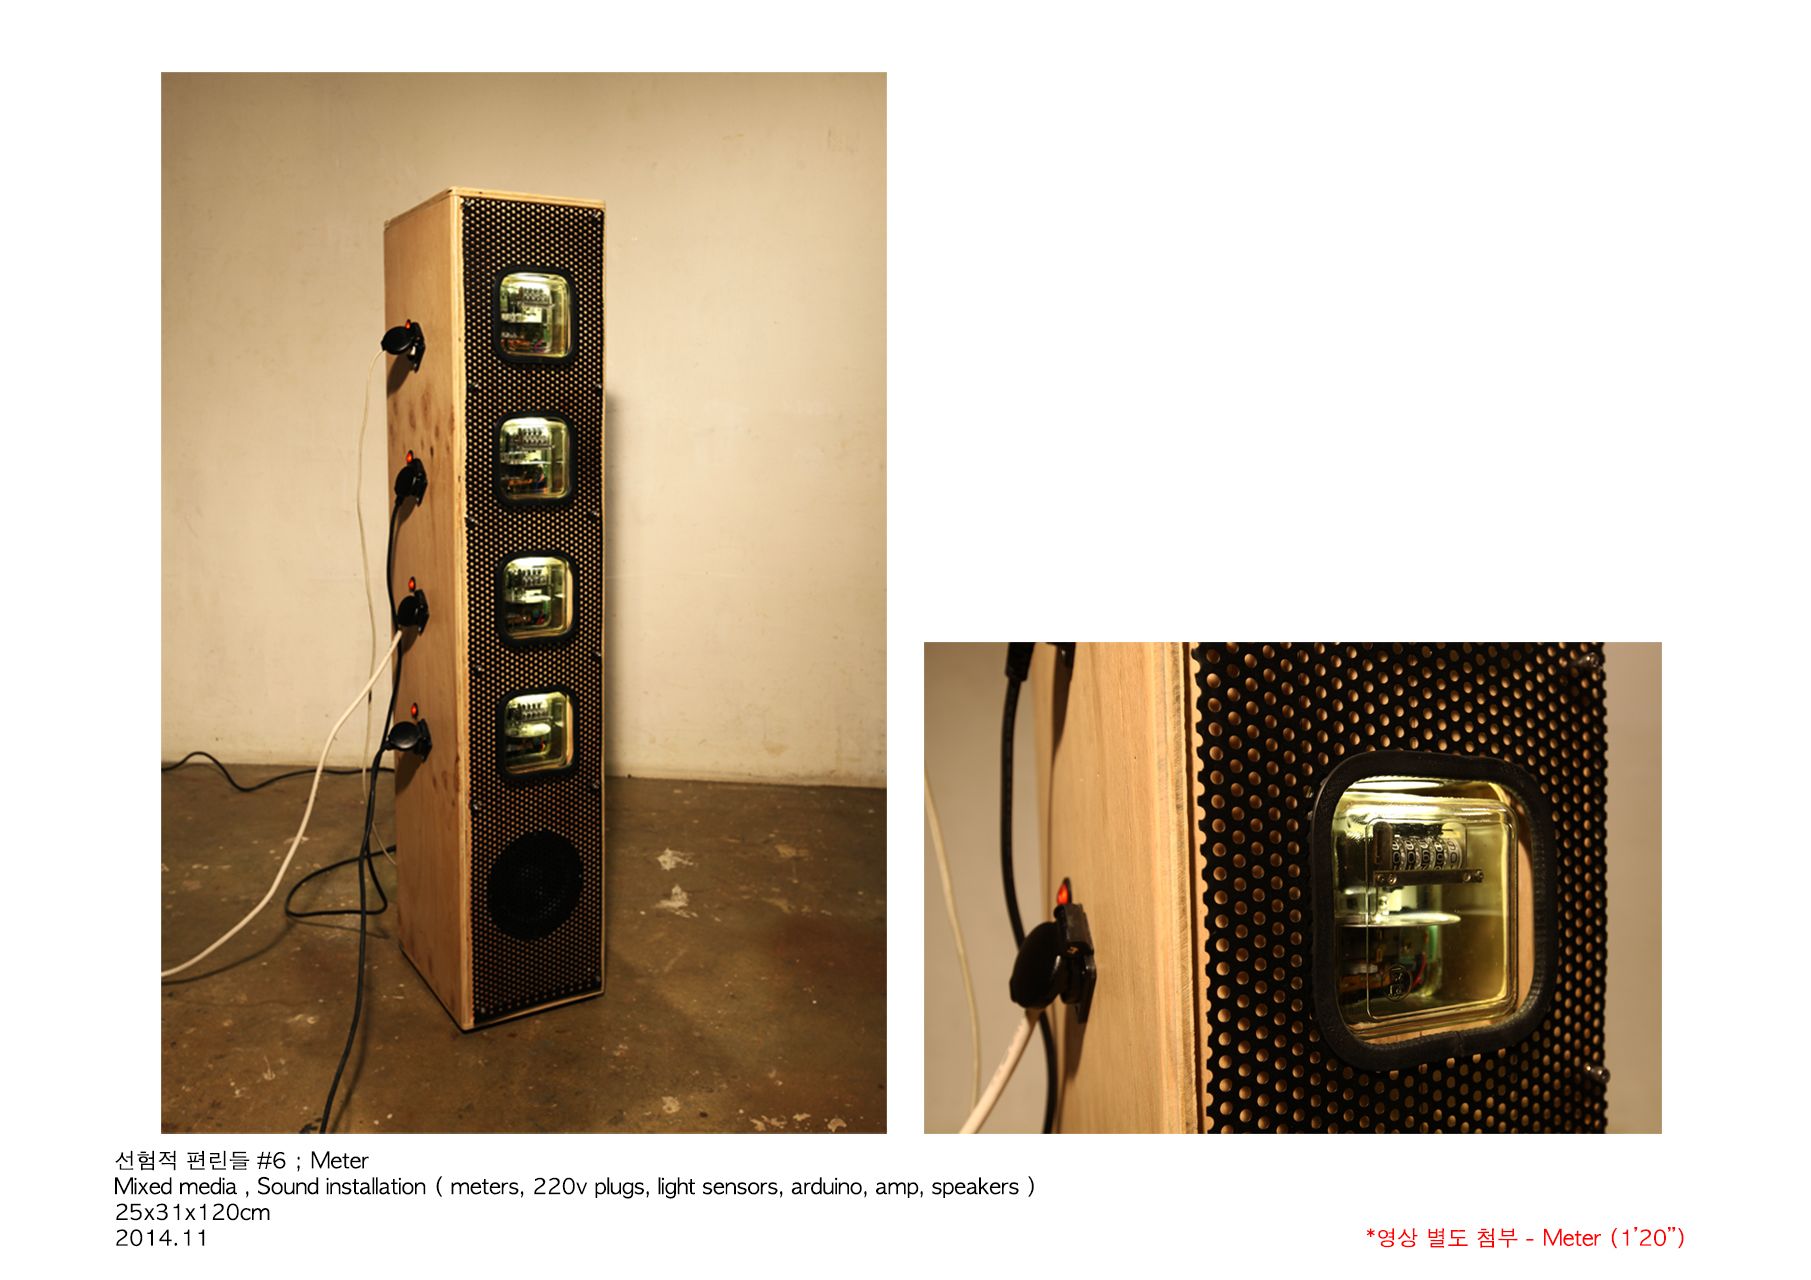 선험적 편린들 #6;Meter_mixed media, sound installation(meters, 220v plugs, light sensors, arduino, amp, speakers)_25x31x120cm_2014